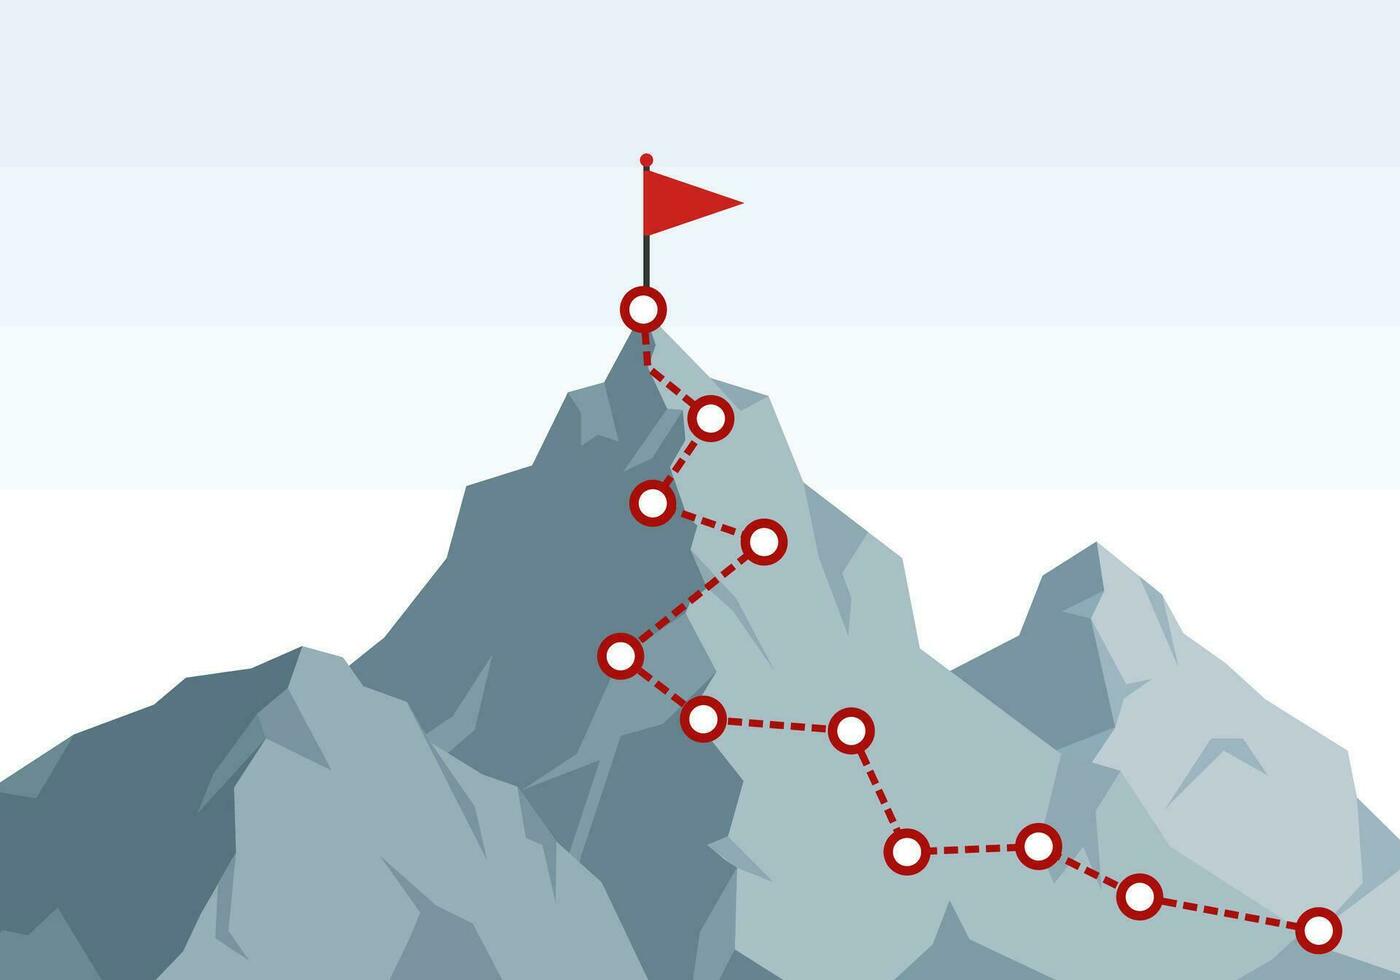 Berg Klettern Route zu Gipfel. Wandern Ausflug zu das oben von das Berg Reise Weg. Route Herausforderung Infografik Werdegang oben Tor Wachstum planen Reise zu Erfolg. Geschäft Klettern Vektor Konzept